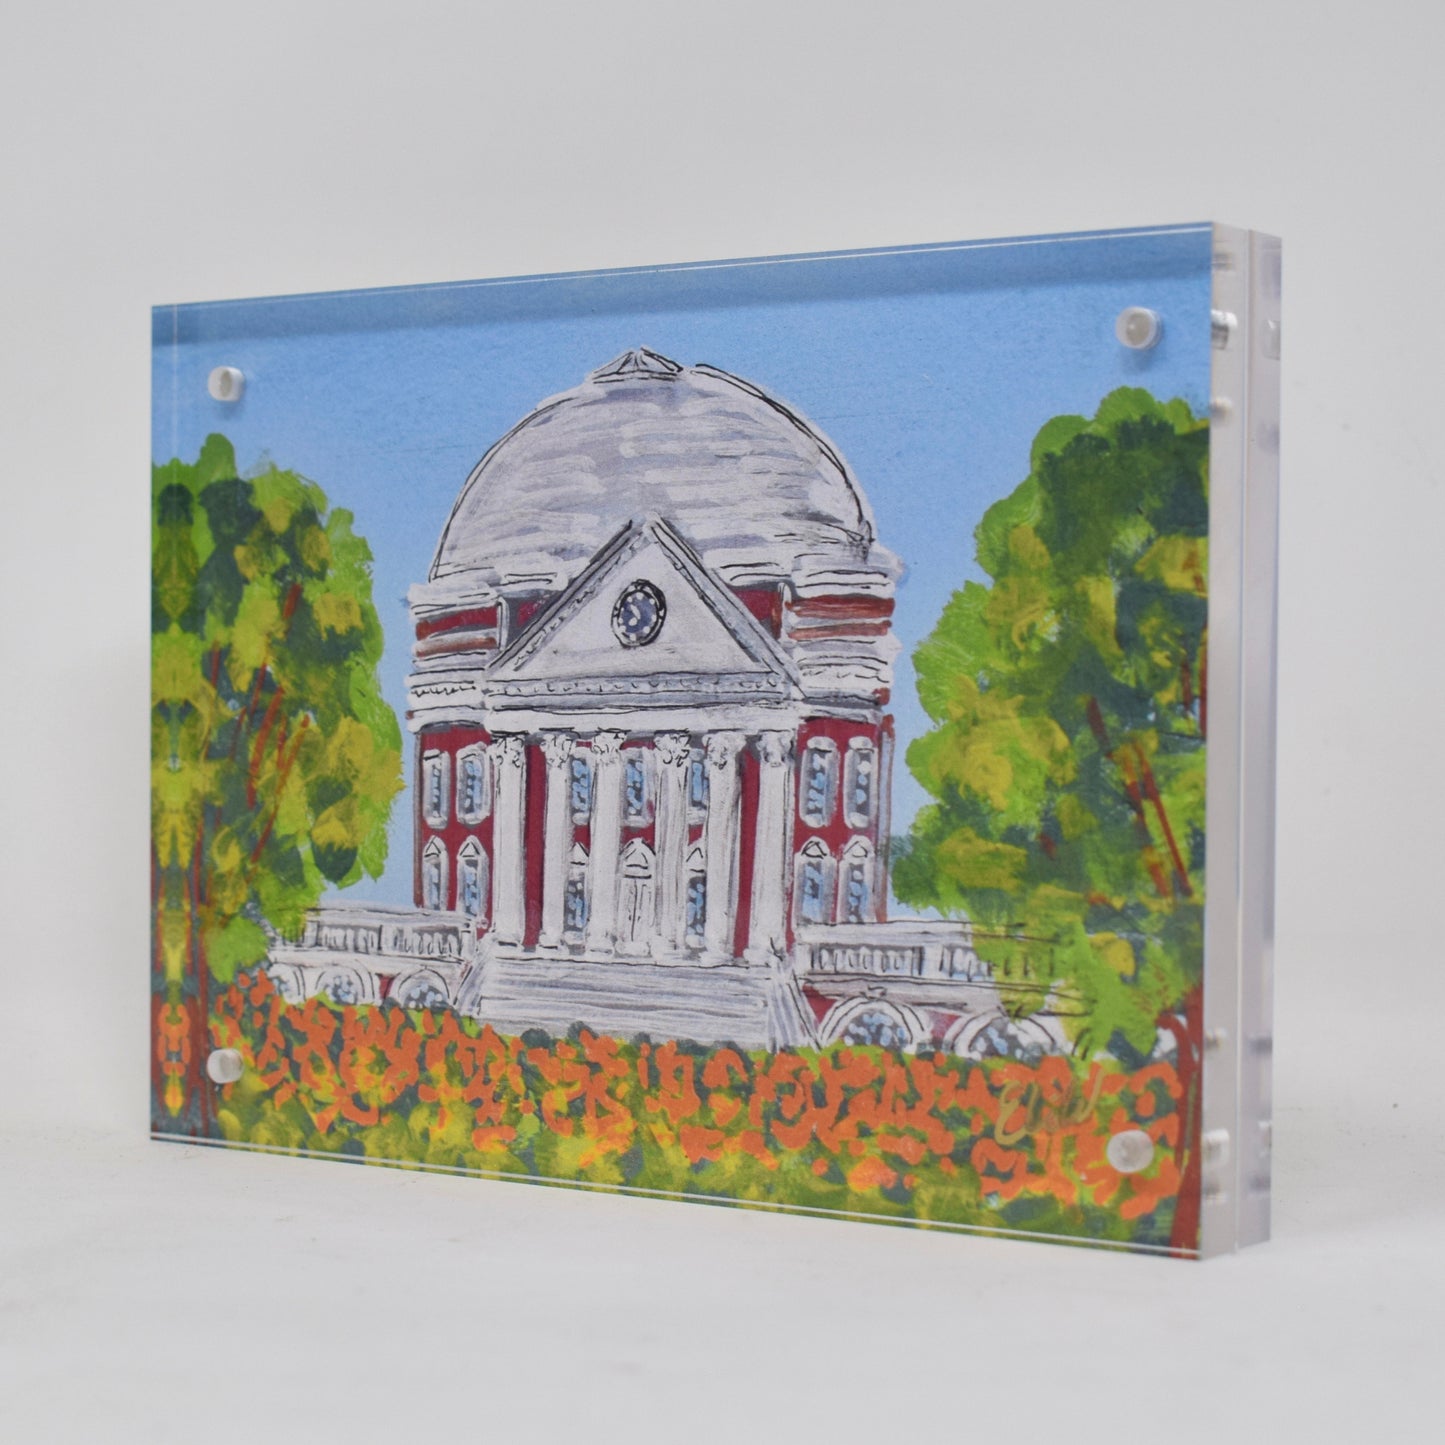 UVA Landmark Acrylic Block - 5x7